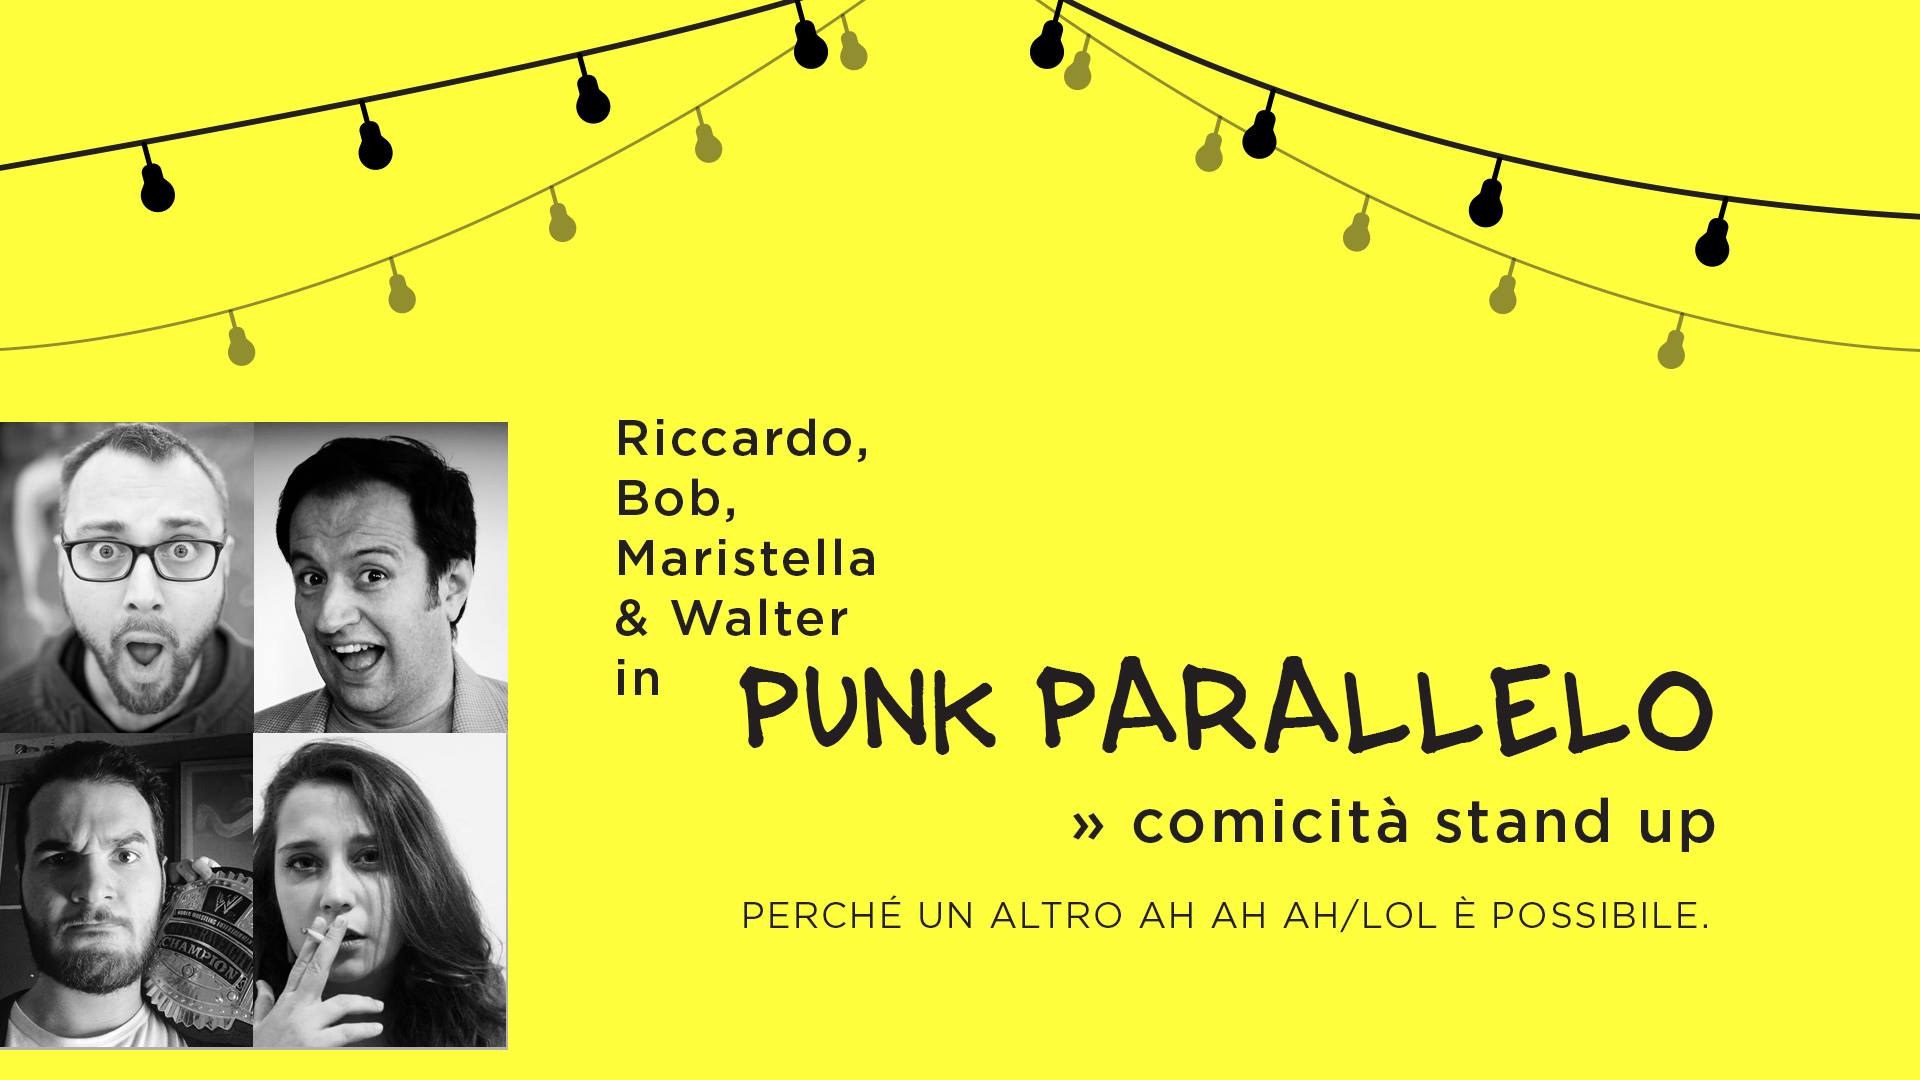 Punk Parallelo / comicità stand up